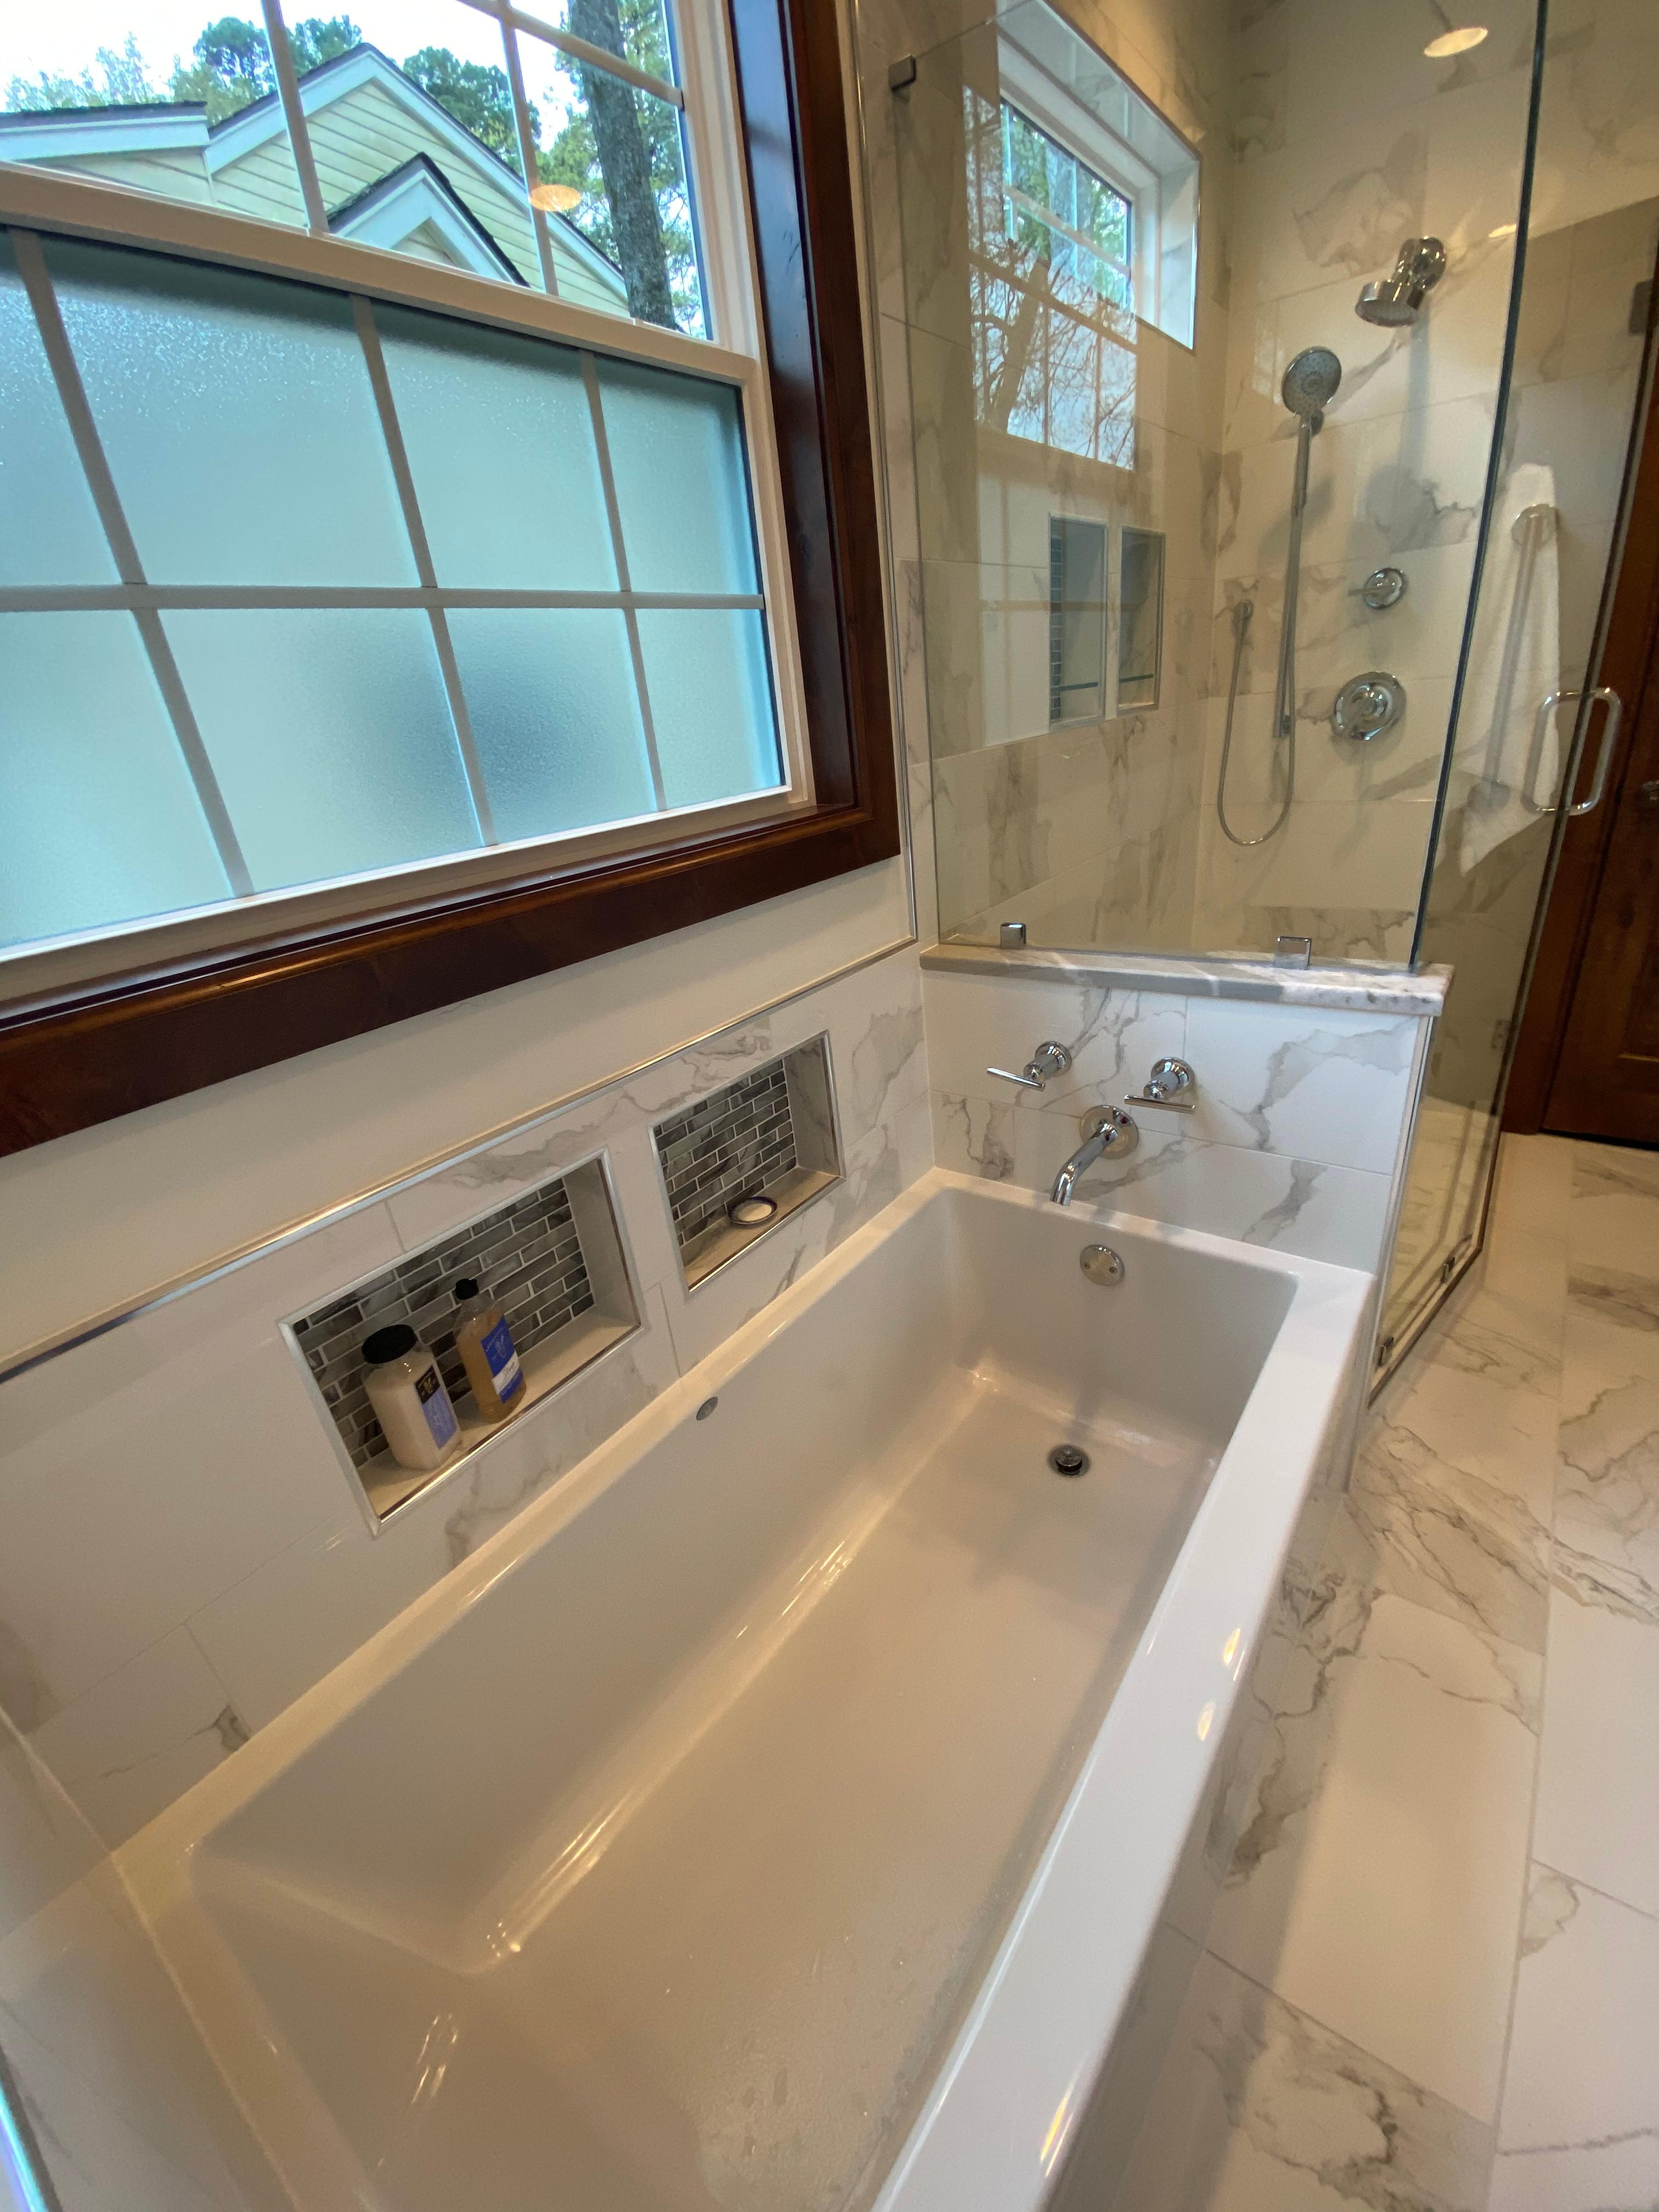 DreamMaker Bath & Kitchen Photo